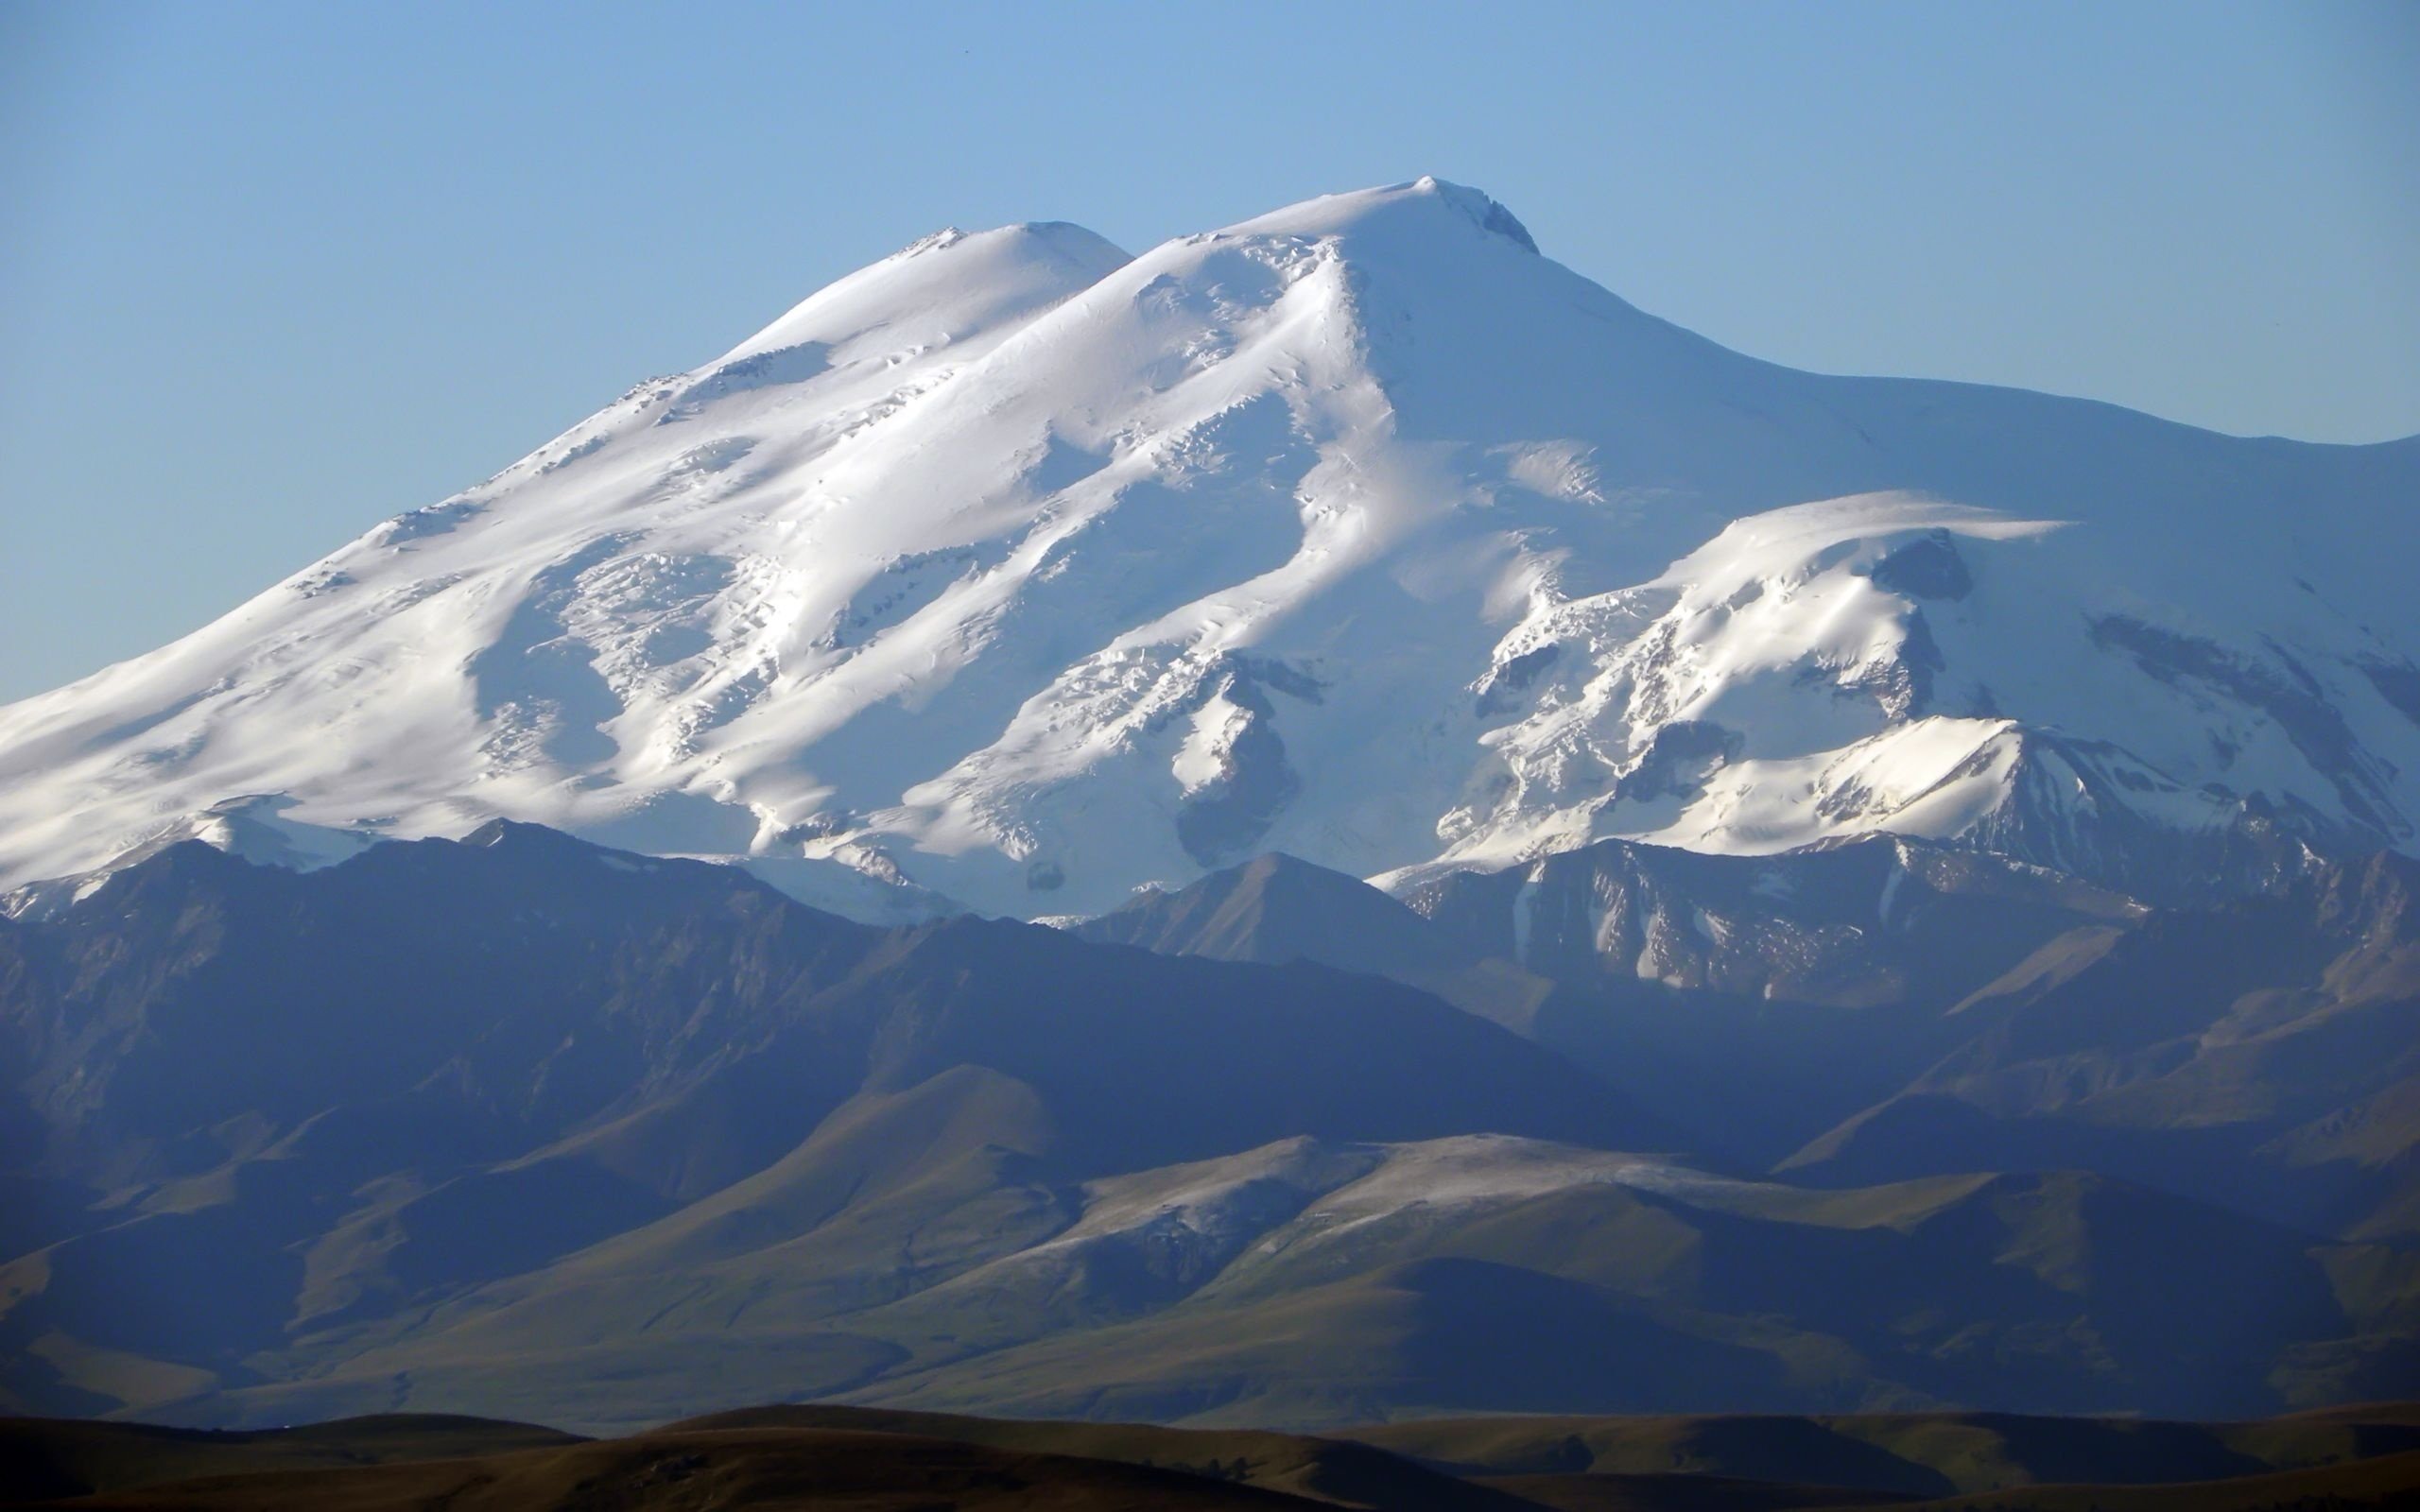 Эльбрус альп. Гора Эльбрус. Эльбрус, Кабардино-Балкария. Вершина Базардюзю. Гора Эльбрус (5642 м) — высочайшая вершина России.